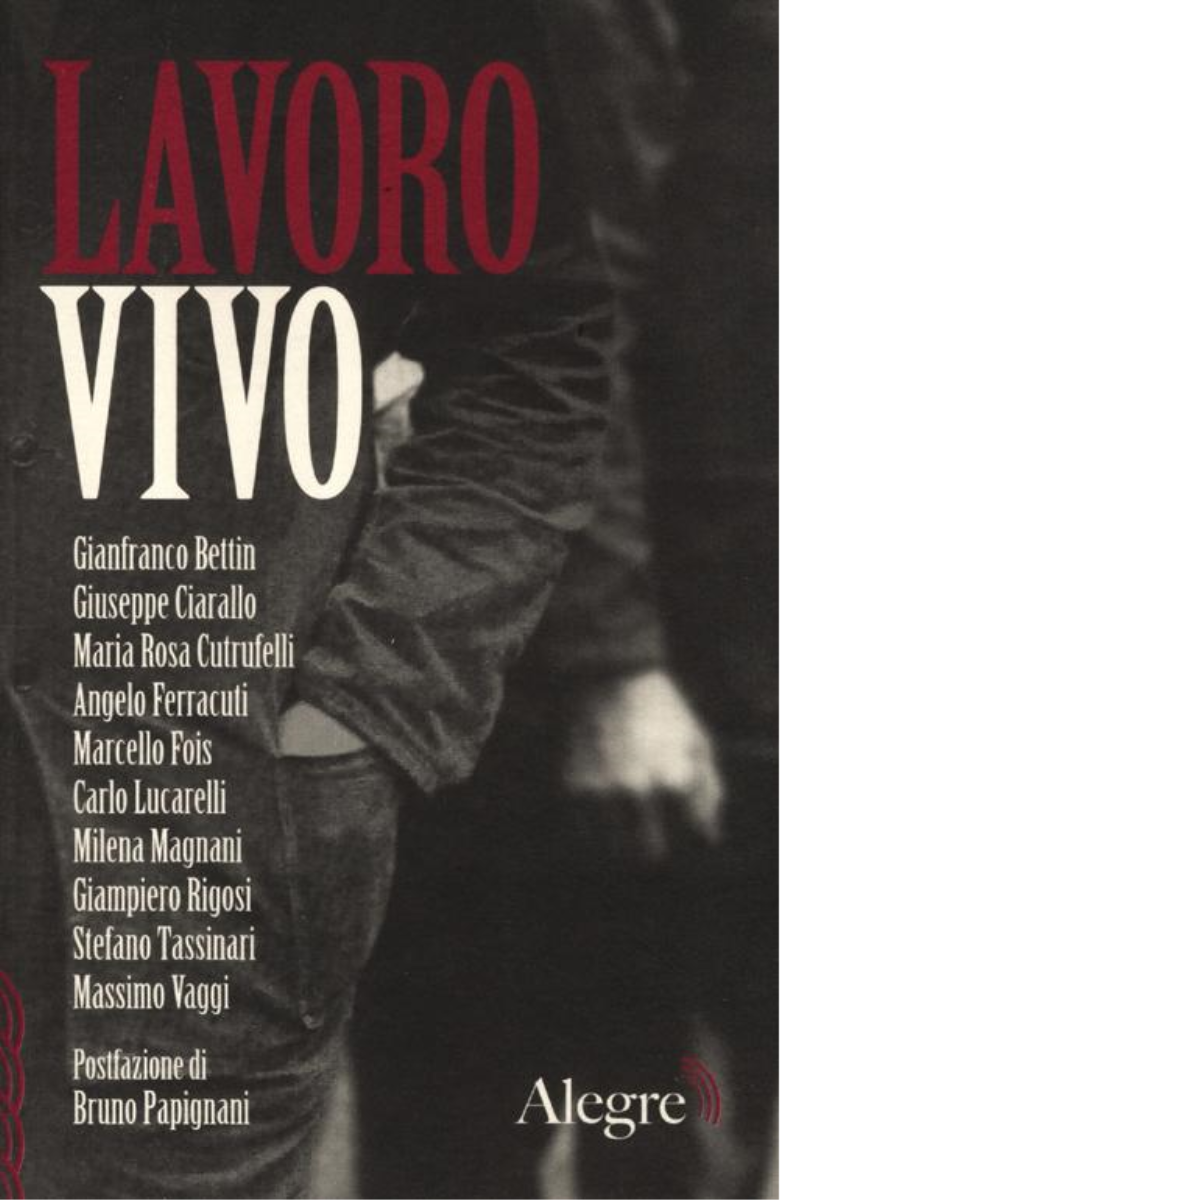 LAVORO VIVO di AA.VV. - edizioni algre, 2012